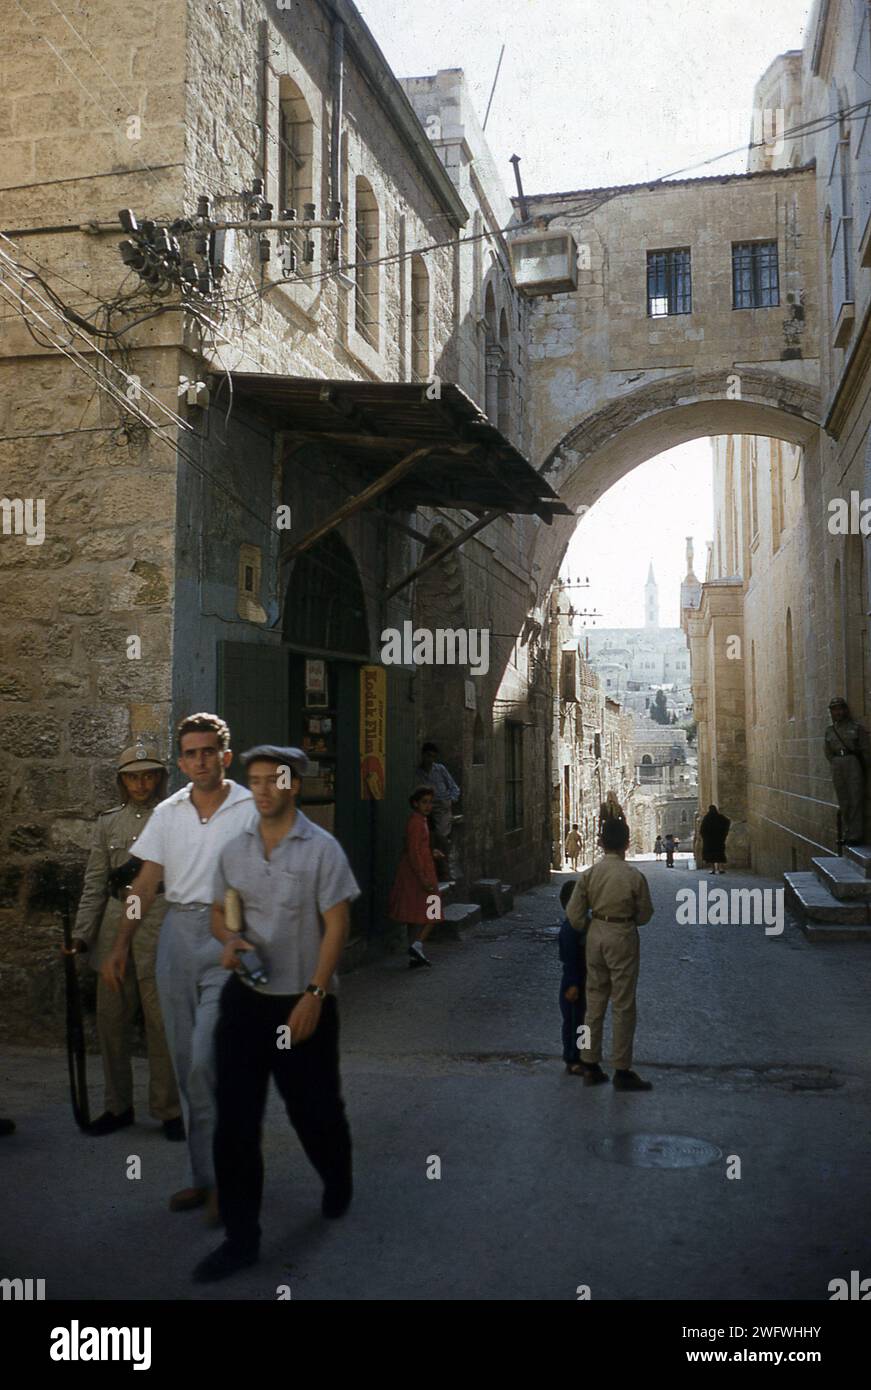 1958, historisch, tagsüber und Blick auf den Central Ecce Homo Arch auf der Via Dolorosa Station of the Cross in Old Jerusalem, Israel. Auf dem Bild sehen wir zwei Wachen, jordanische Soldaten, einer trägt einen Sonnenhut und hält ein Gewehr, Stockfoto